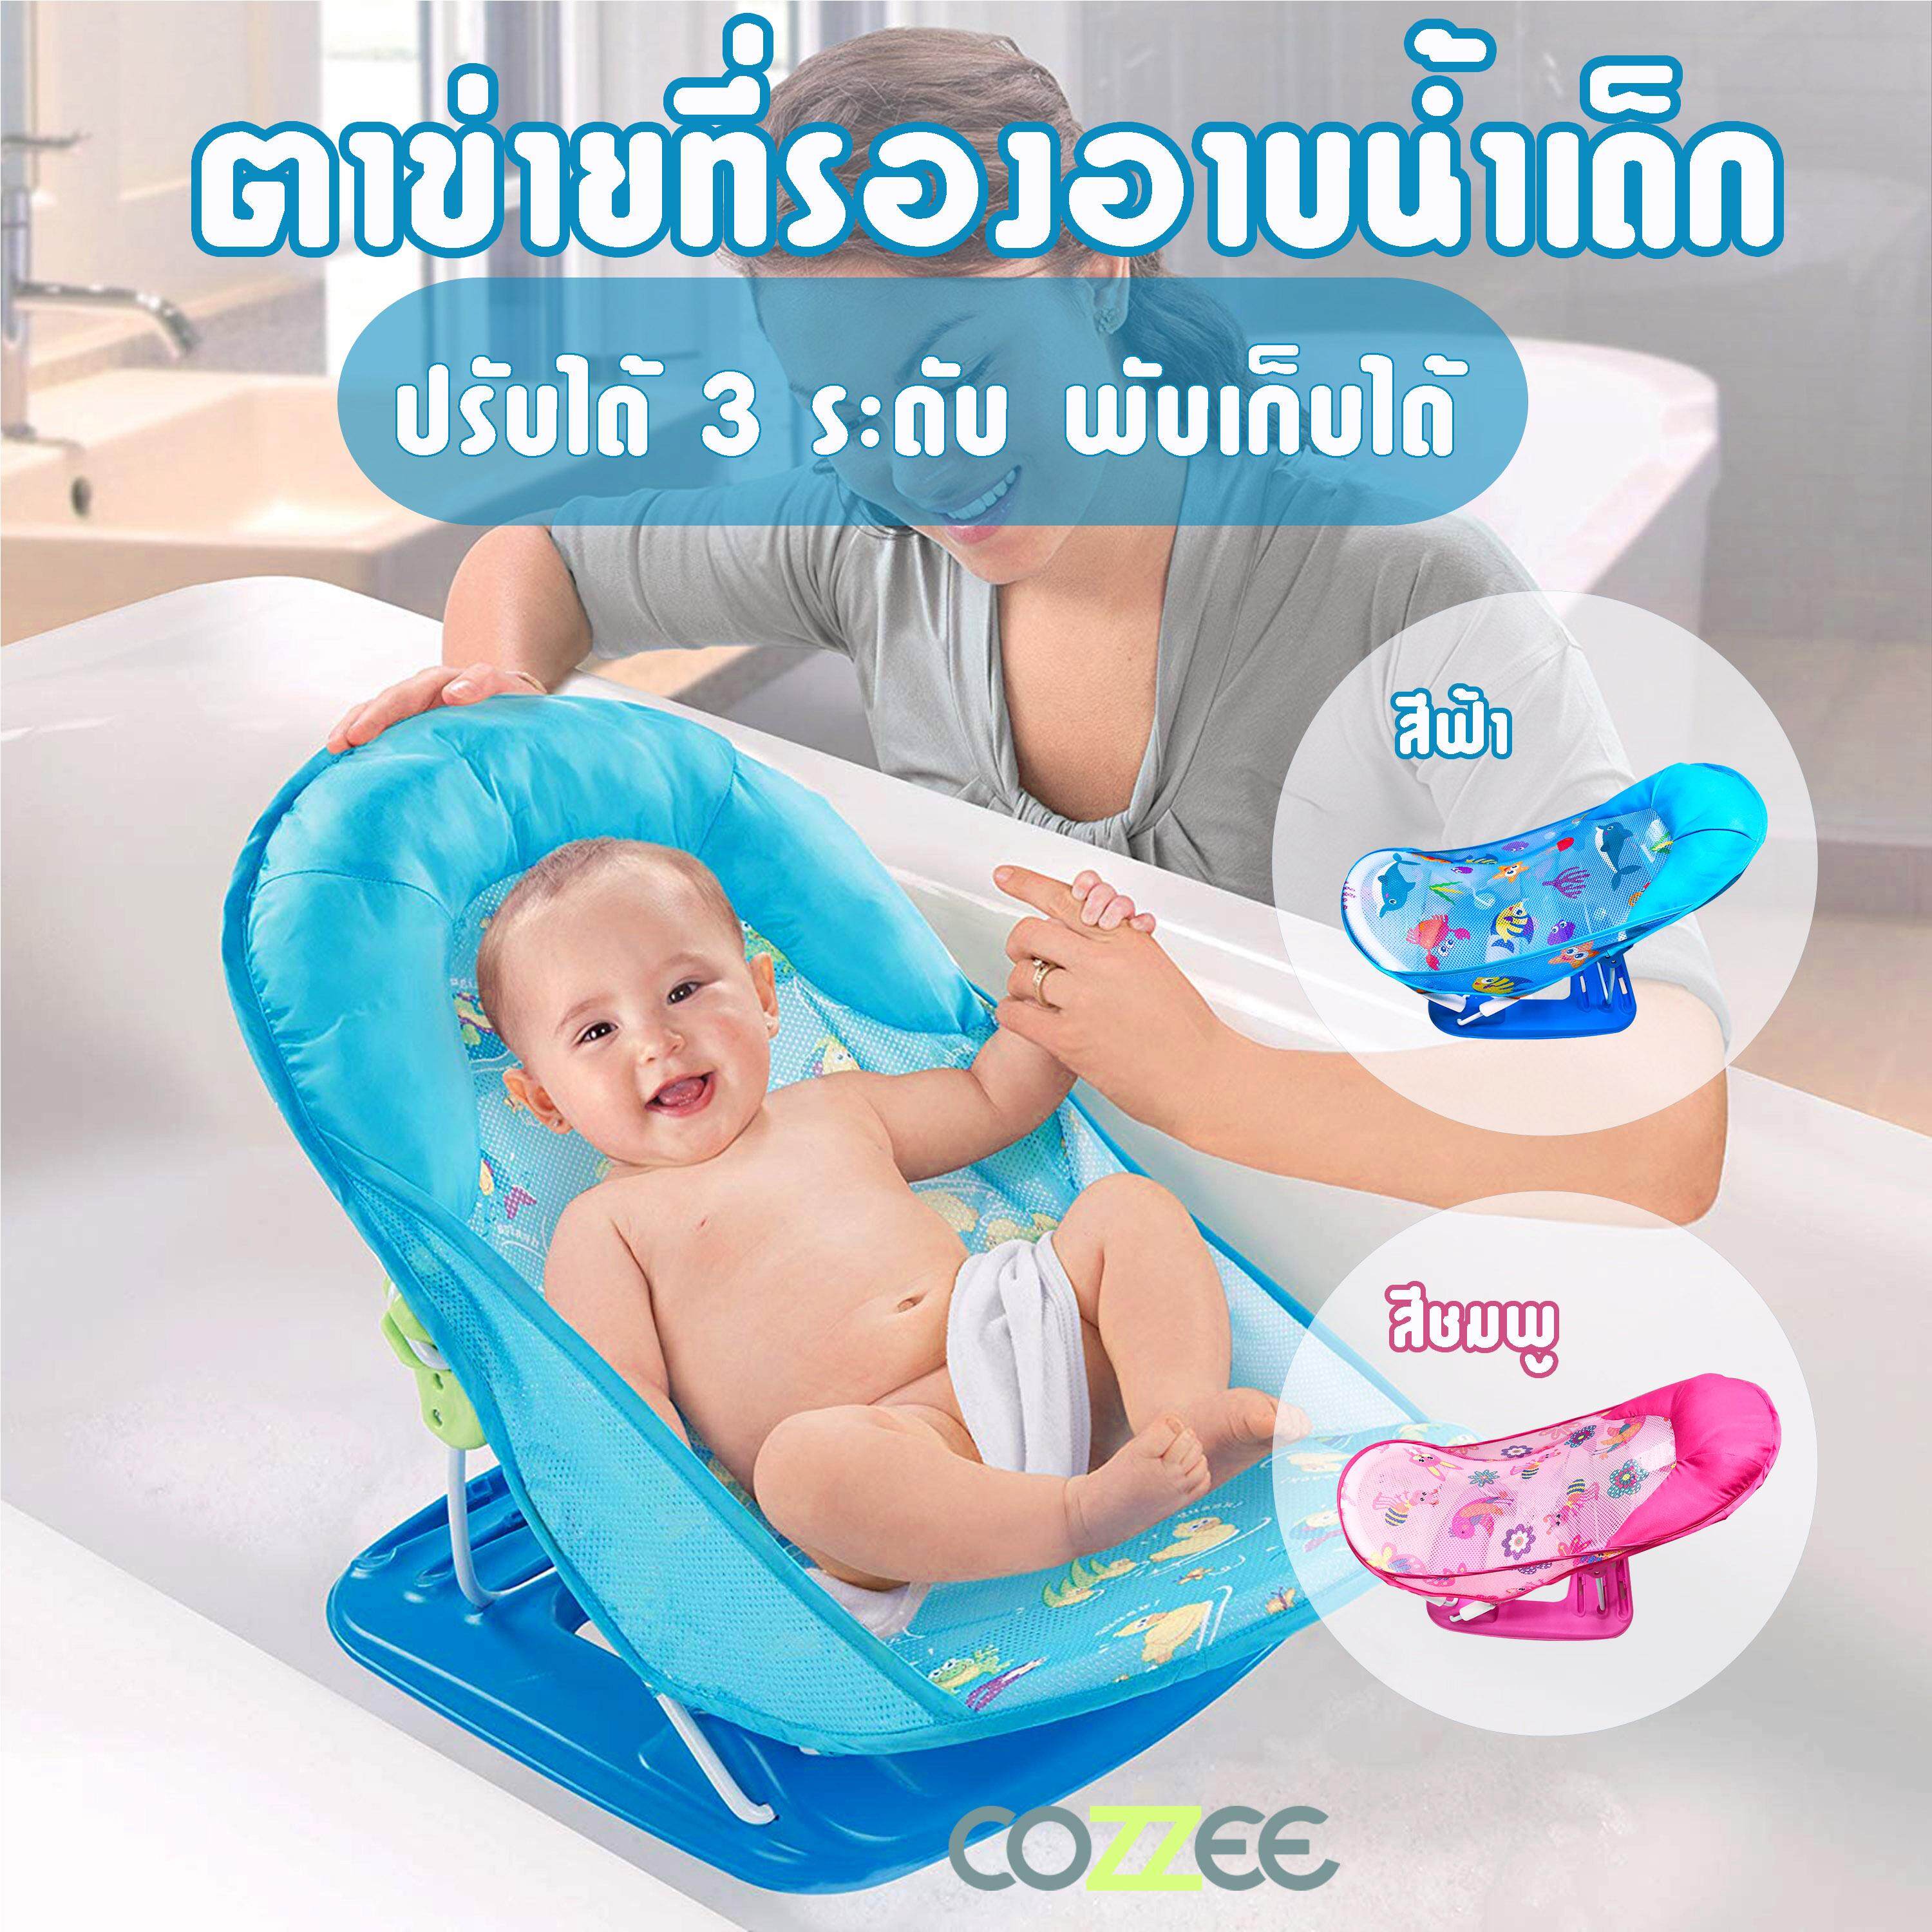 โปรโมชั่น COZZEE ที่รองอาบน้ำเด็กทารก ตาข่ายรองอาบน้ำเด็ก เตียงอาบน้ำเด็ก ที่นอนอาบน้ำเด็ก พับเก็บได้ เปลรองอาบน้ำเด็ก ที่อาบน้ำเด็กทารก รุ่น IBABY